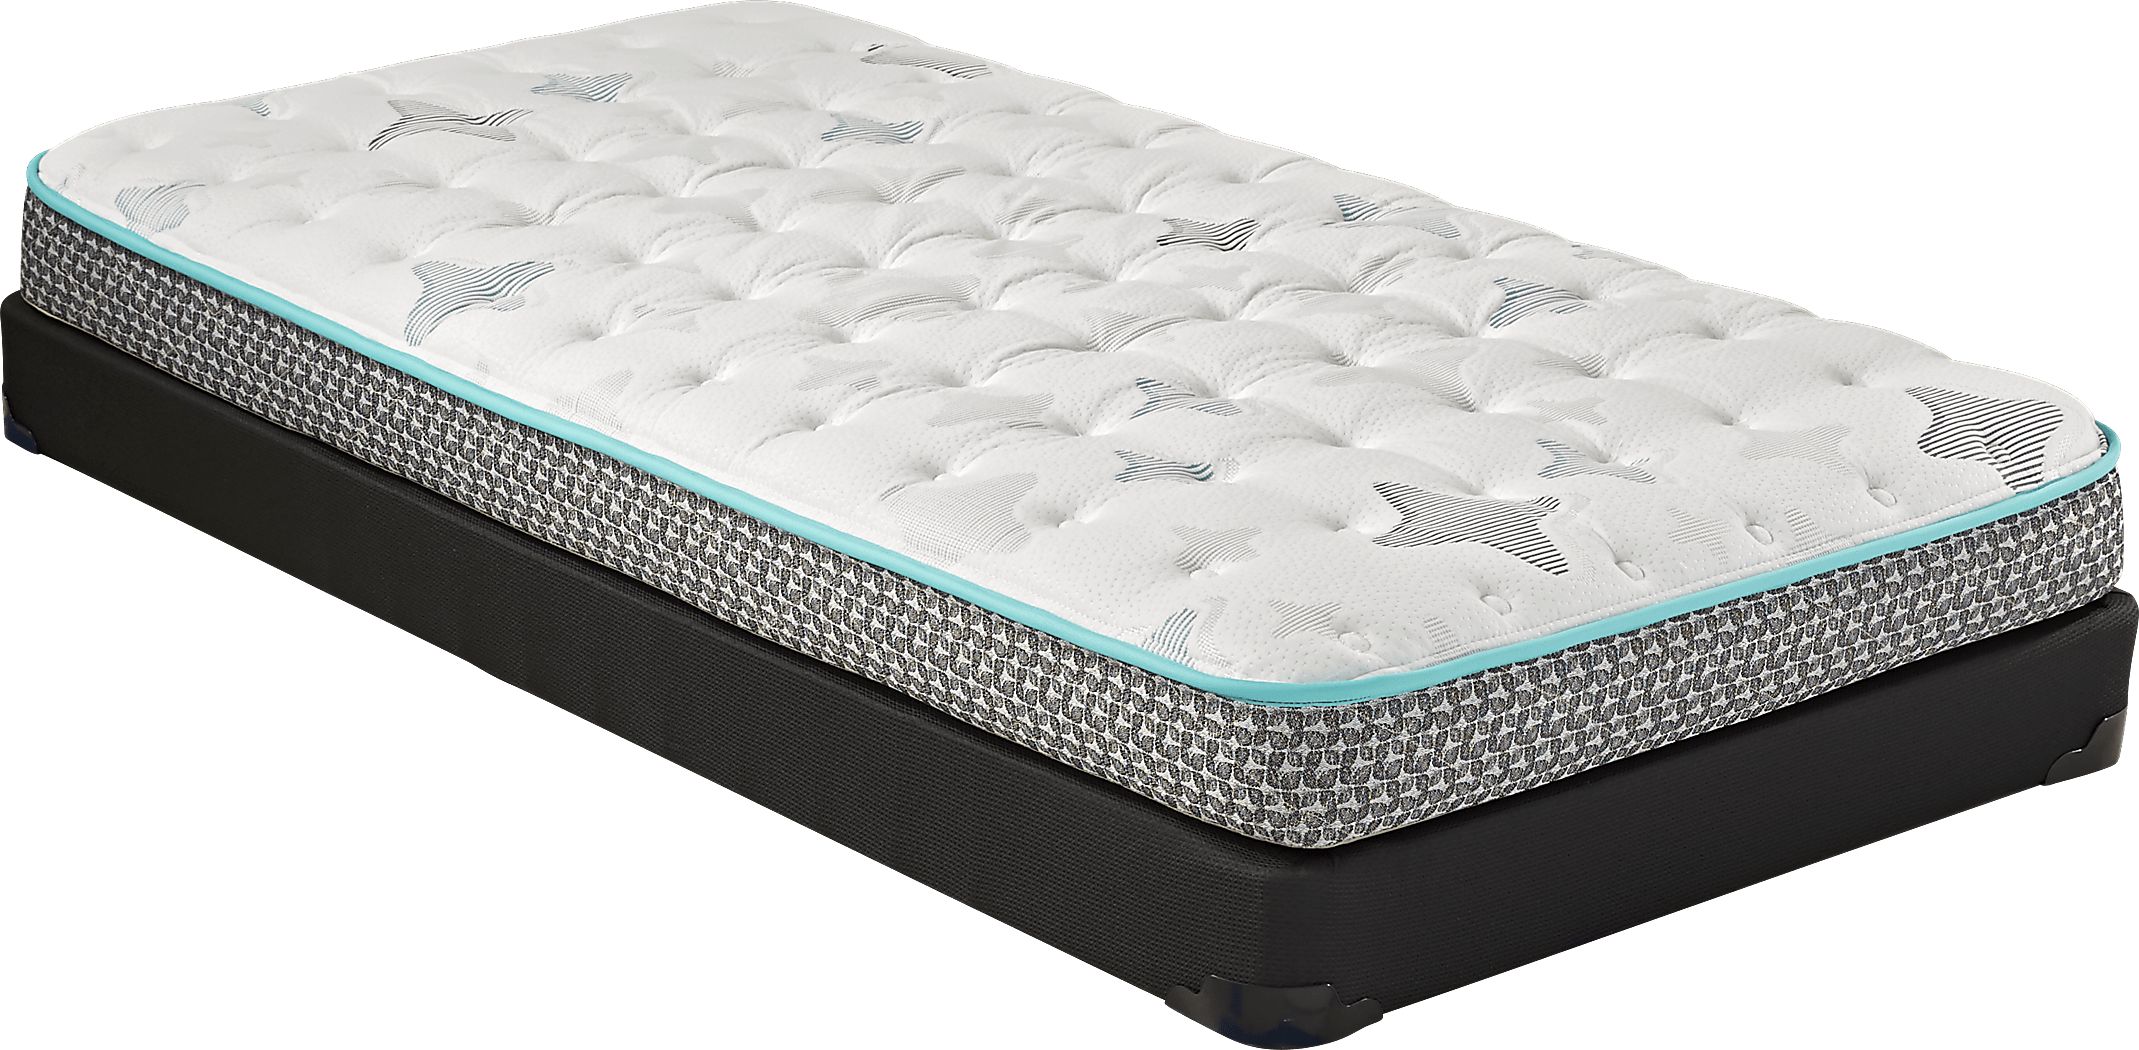 sealy z-301 twin mattress reviews